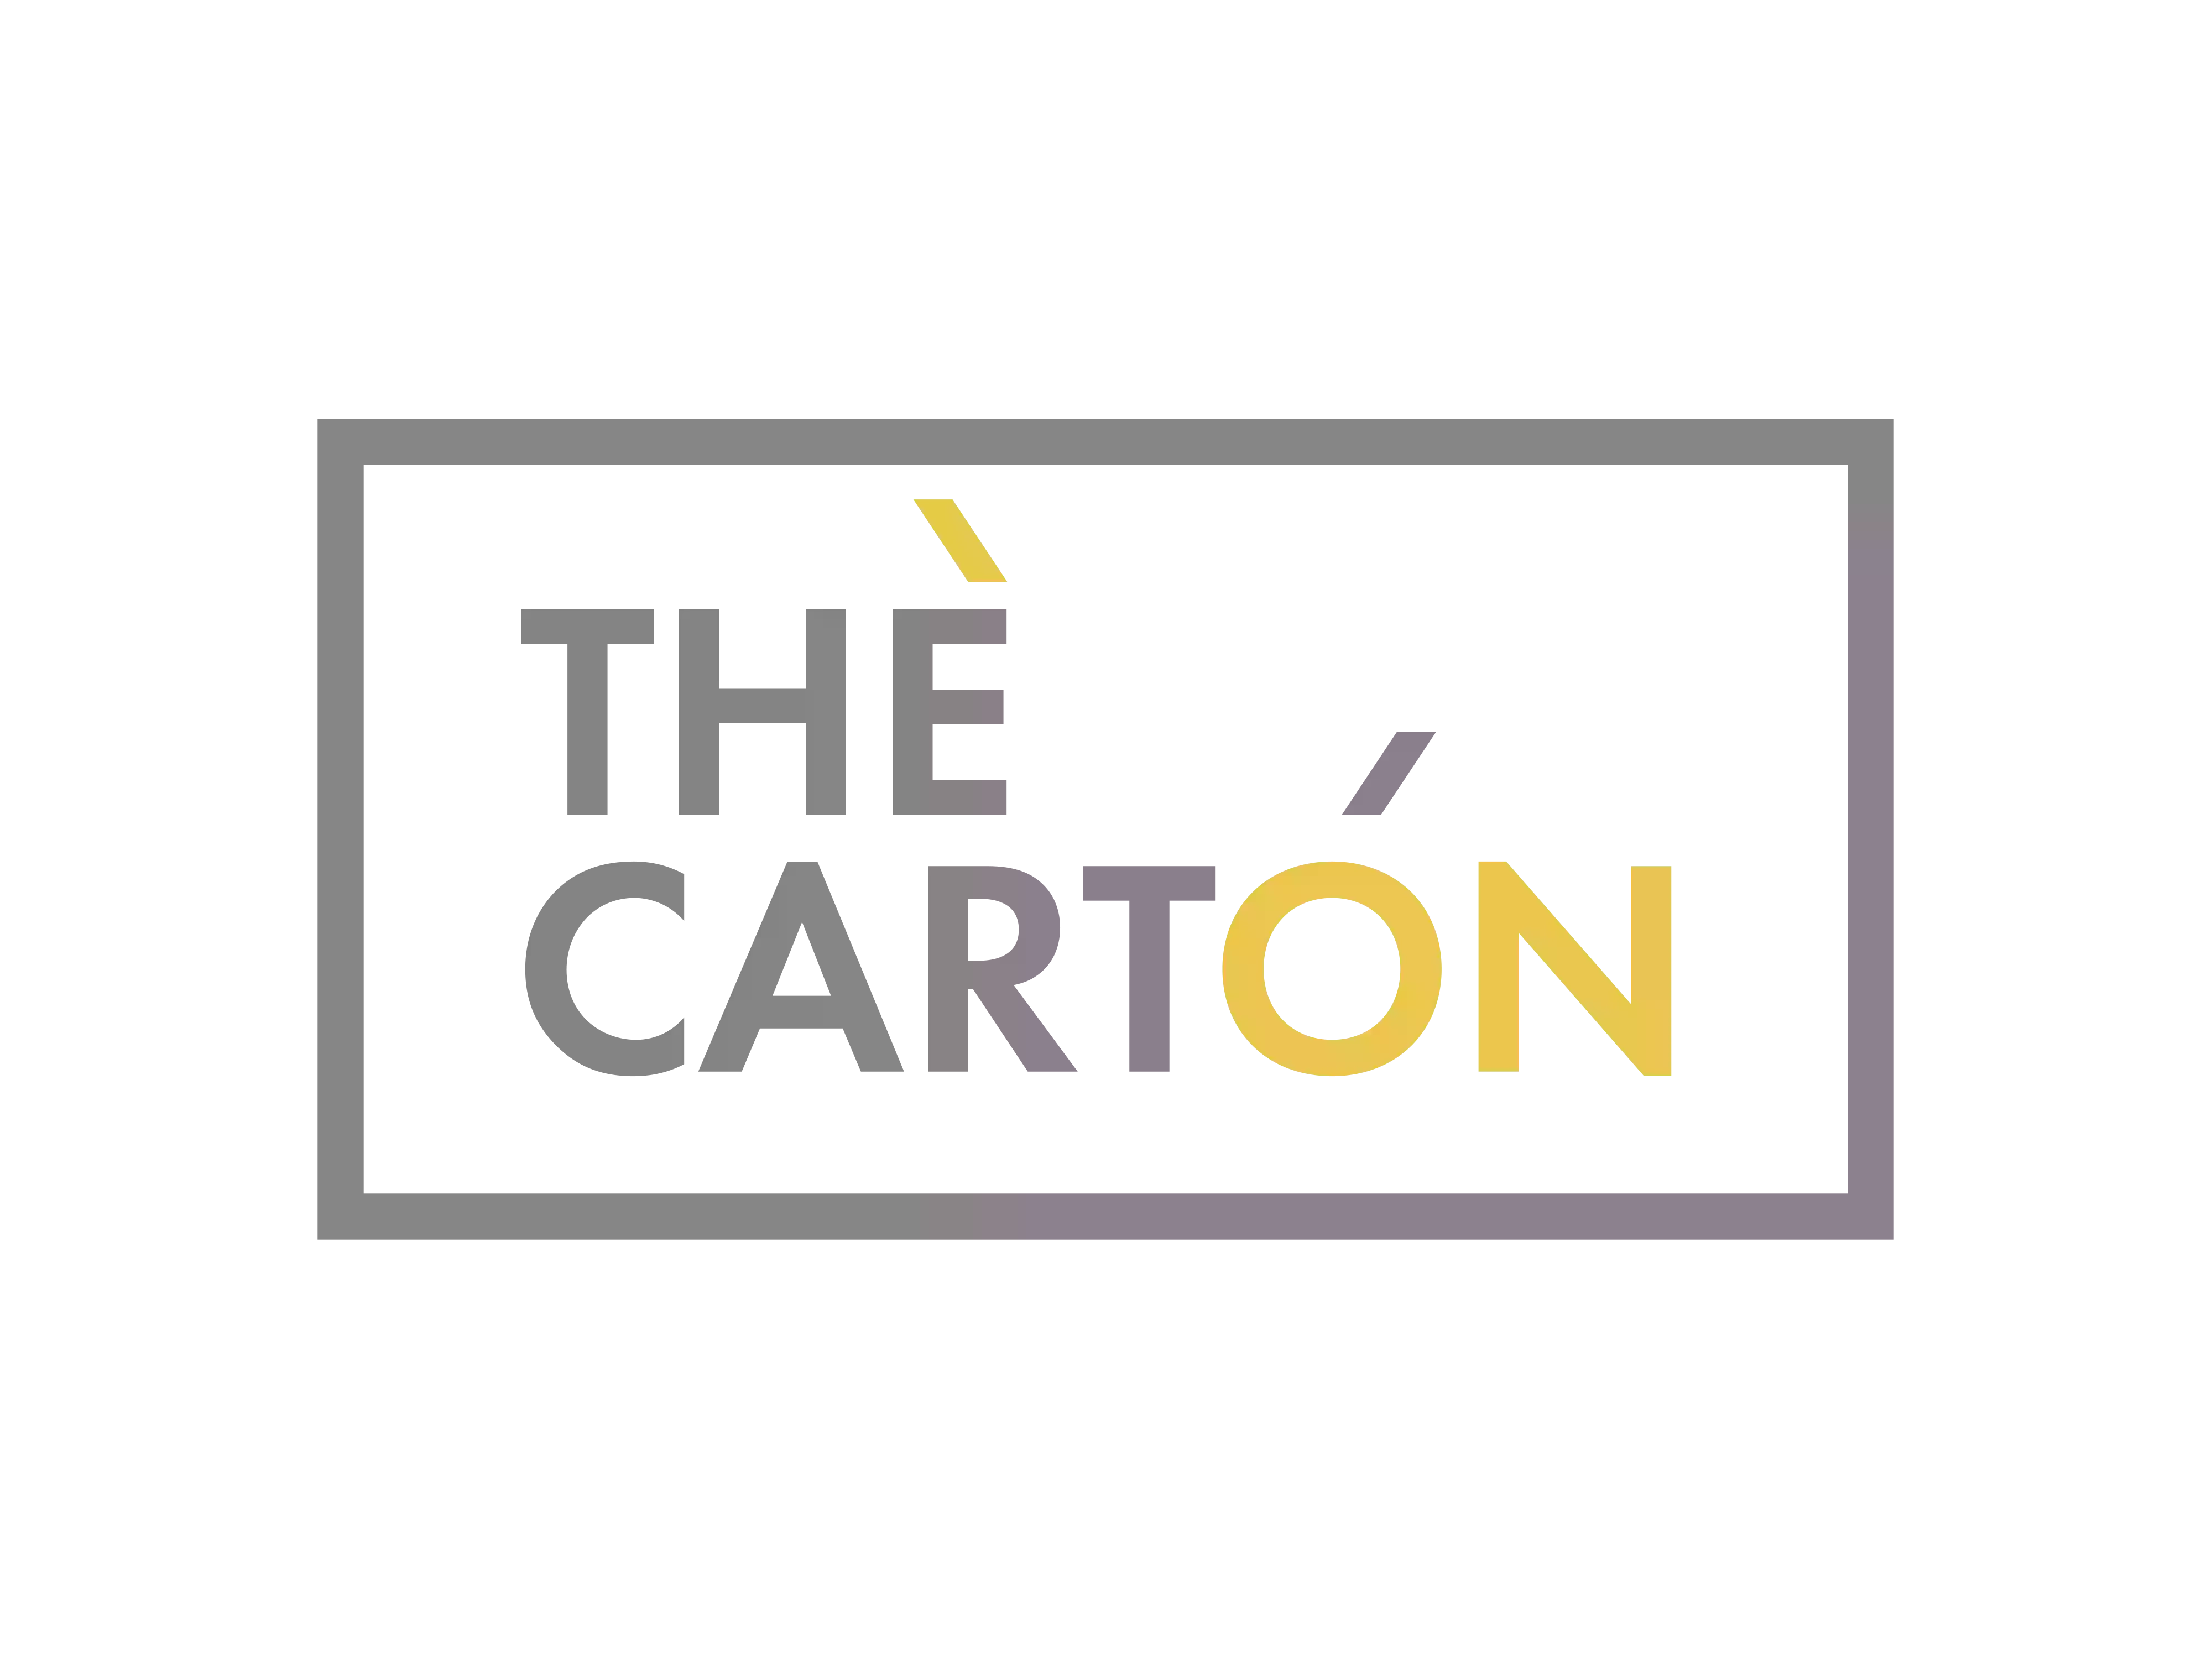 THE CARTON